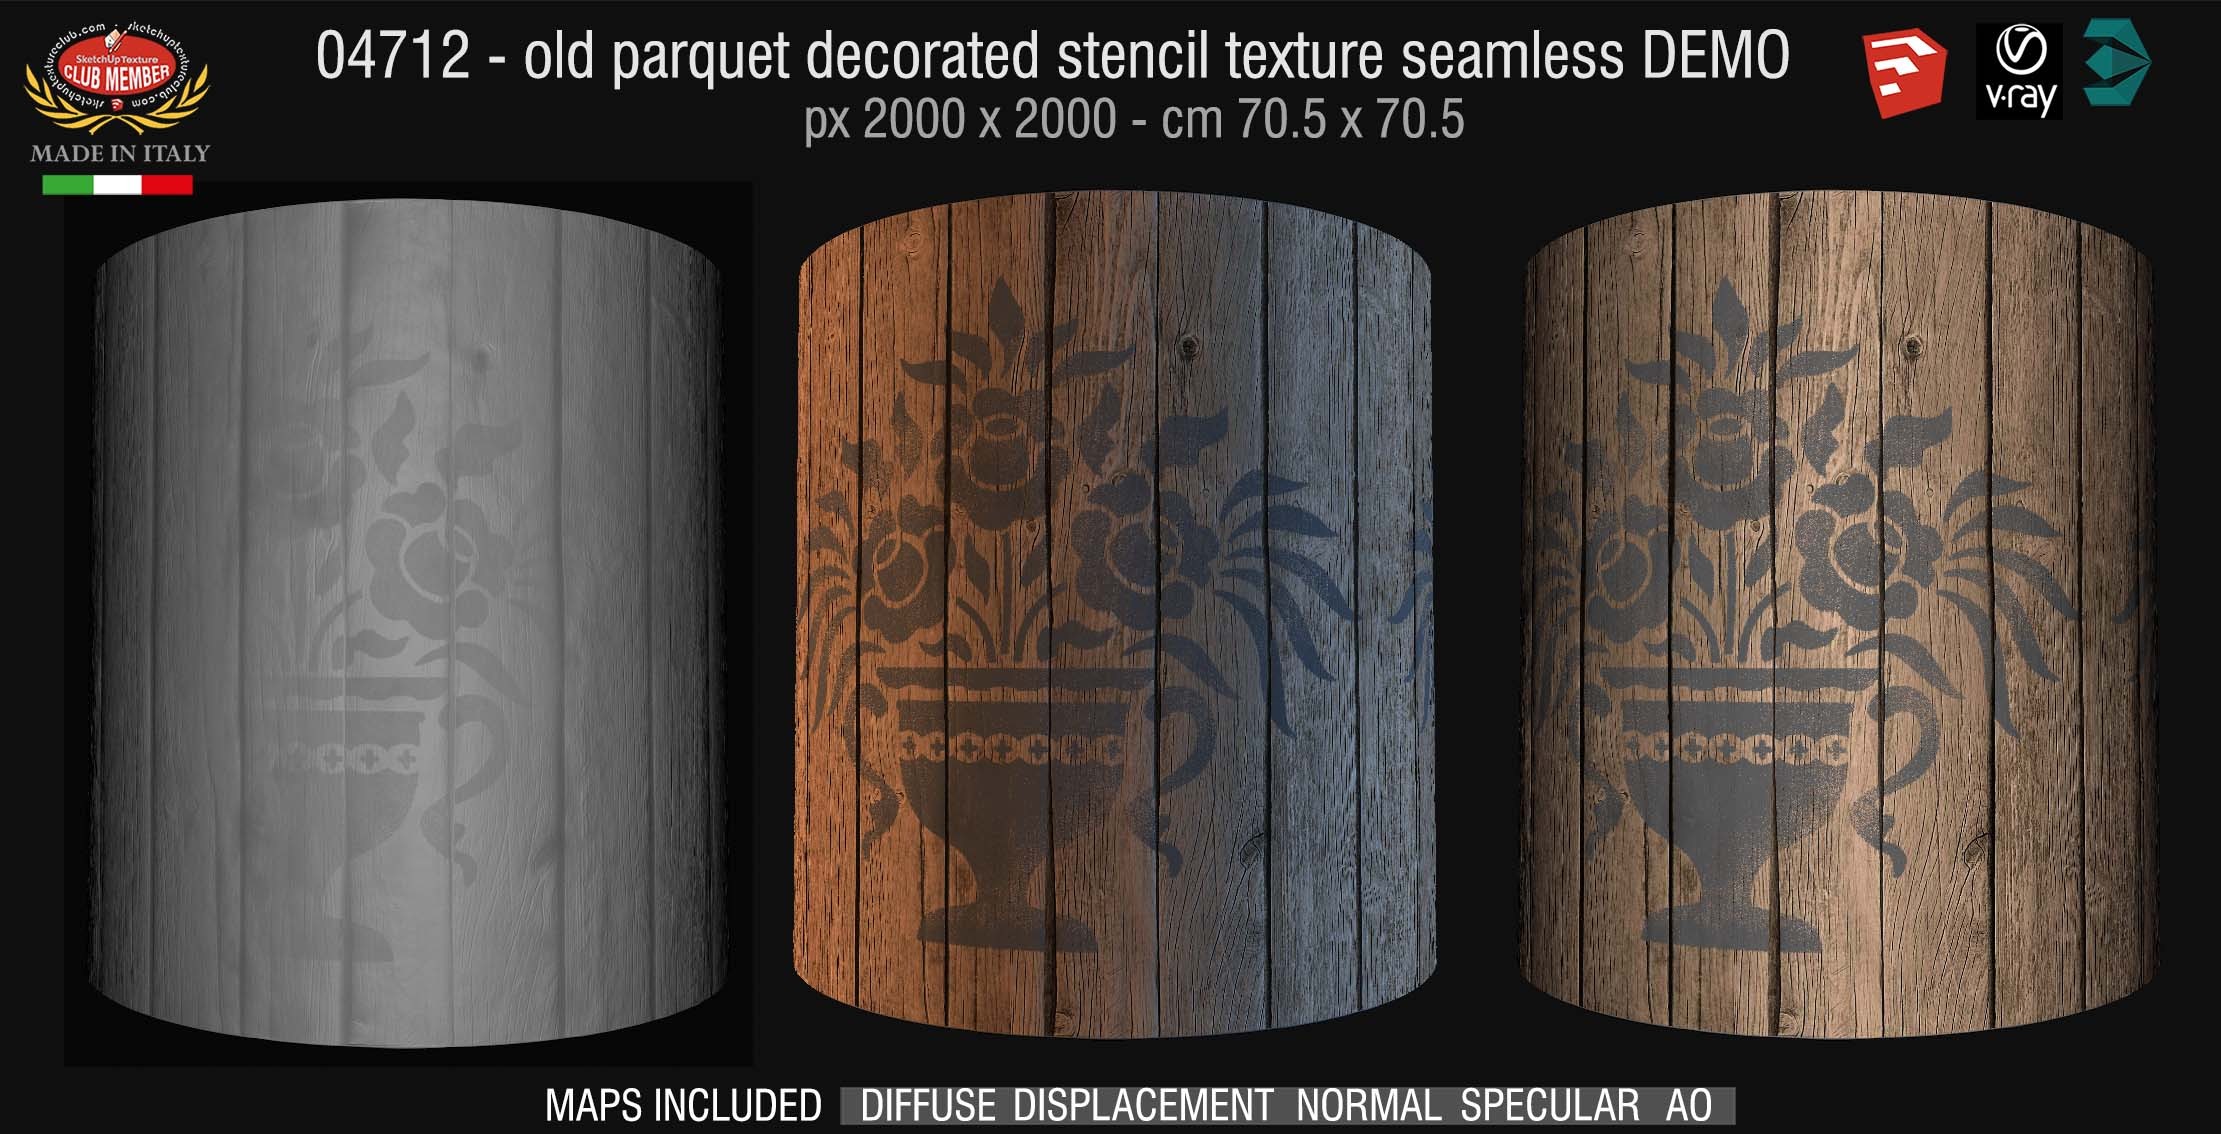 04712 HR Parquet decorated stencil texture seamless + maps DEMO